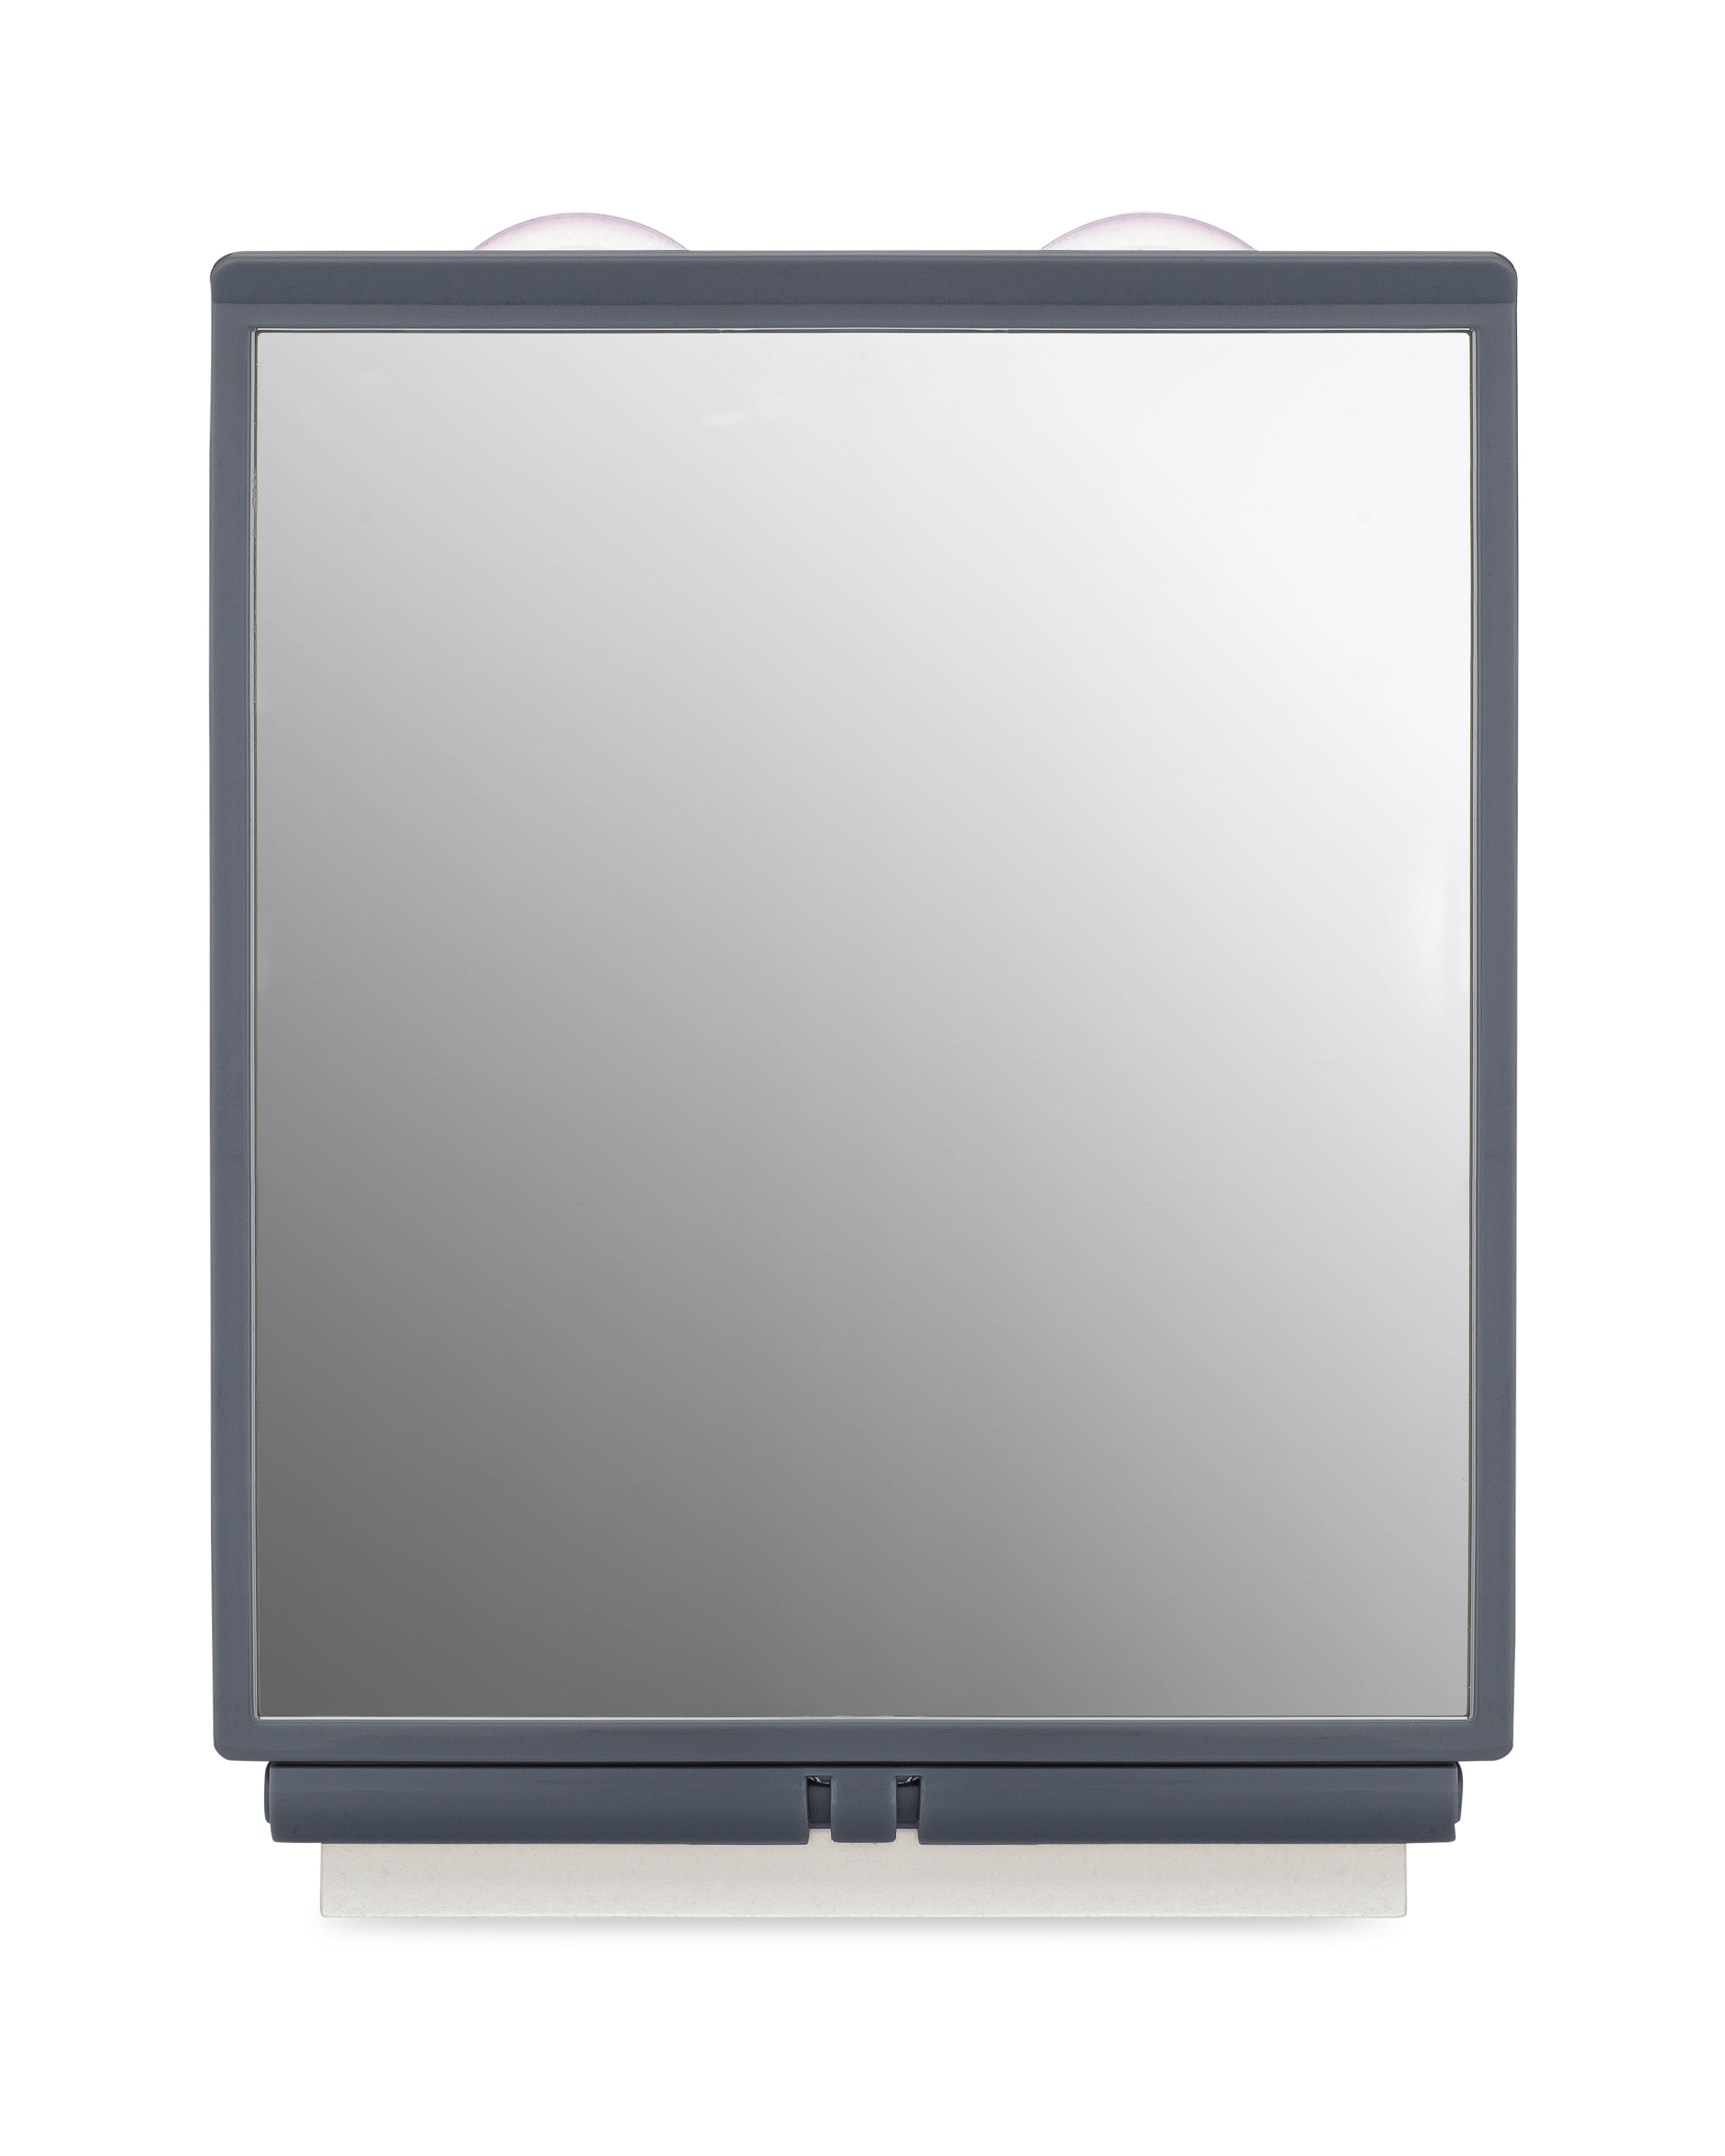 Fog Free Shower Mirror, Anti Fog Shower Mirror Manufacturer